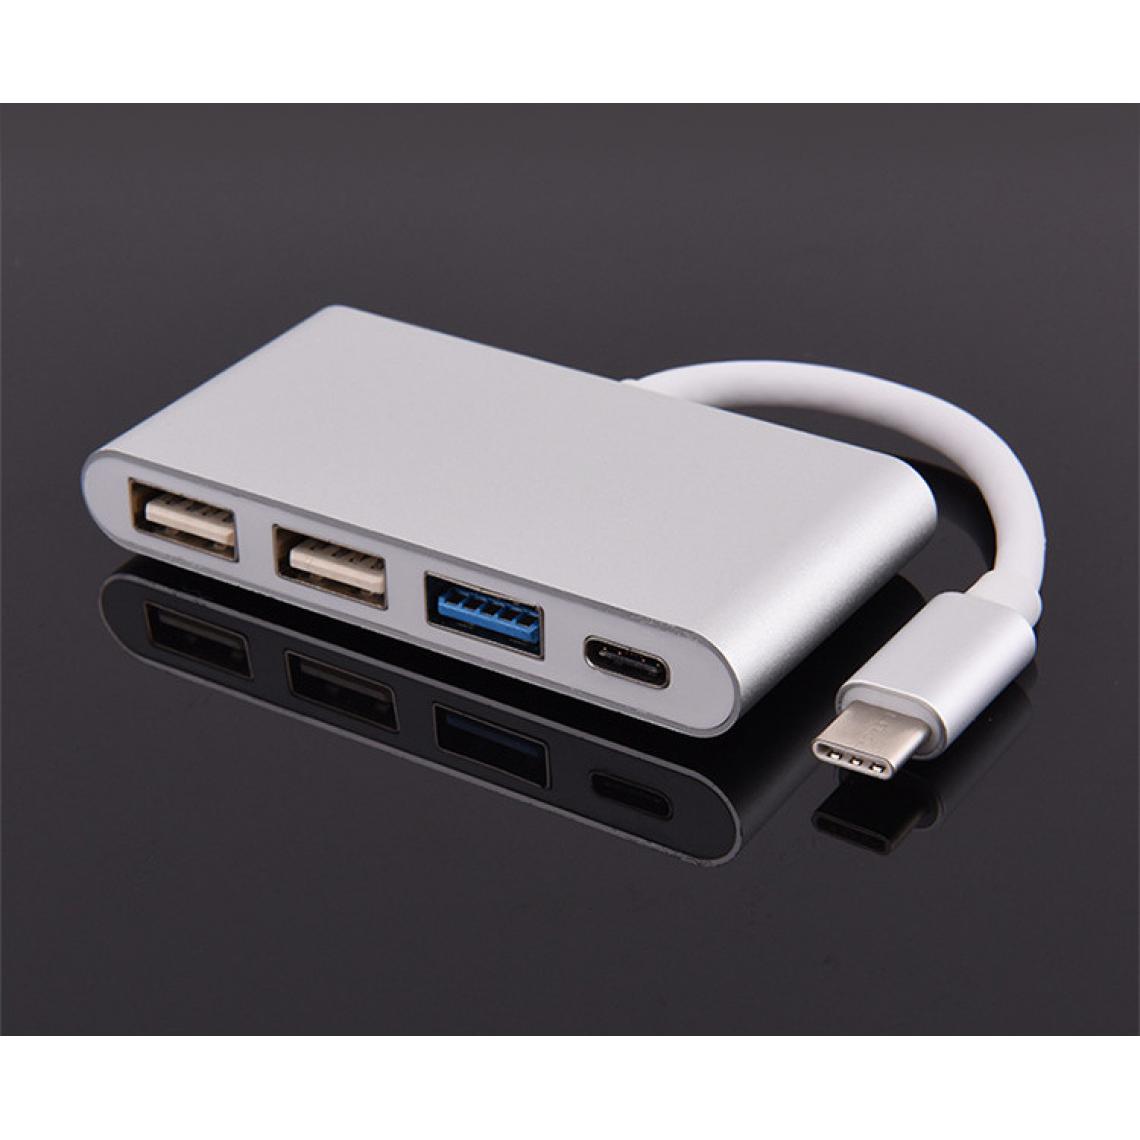 Shot - Multi Adaptateur 4 en 1 Type C pour LeEco Le Max 2 Smartphone Hub 2 ports USB 2.0 1 Port USB 3.0 (ARGENT) - Hub